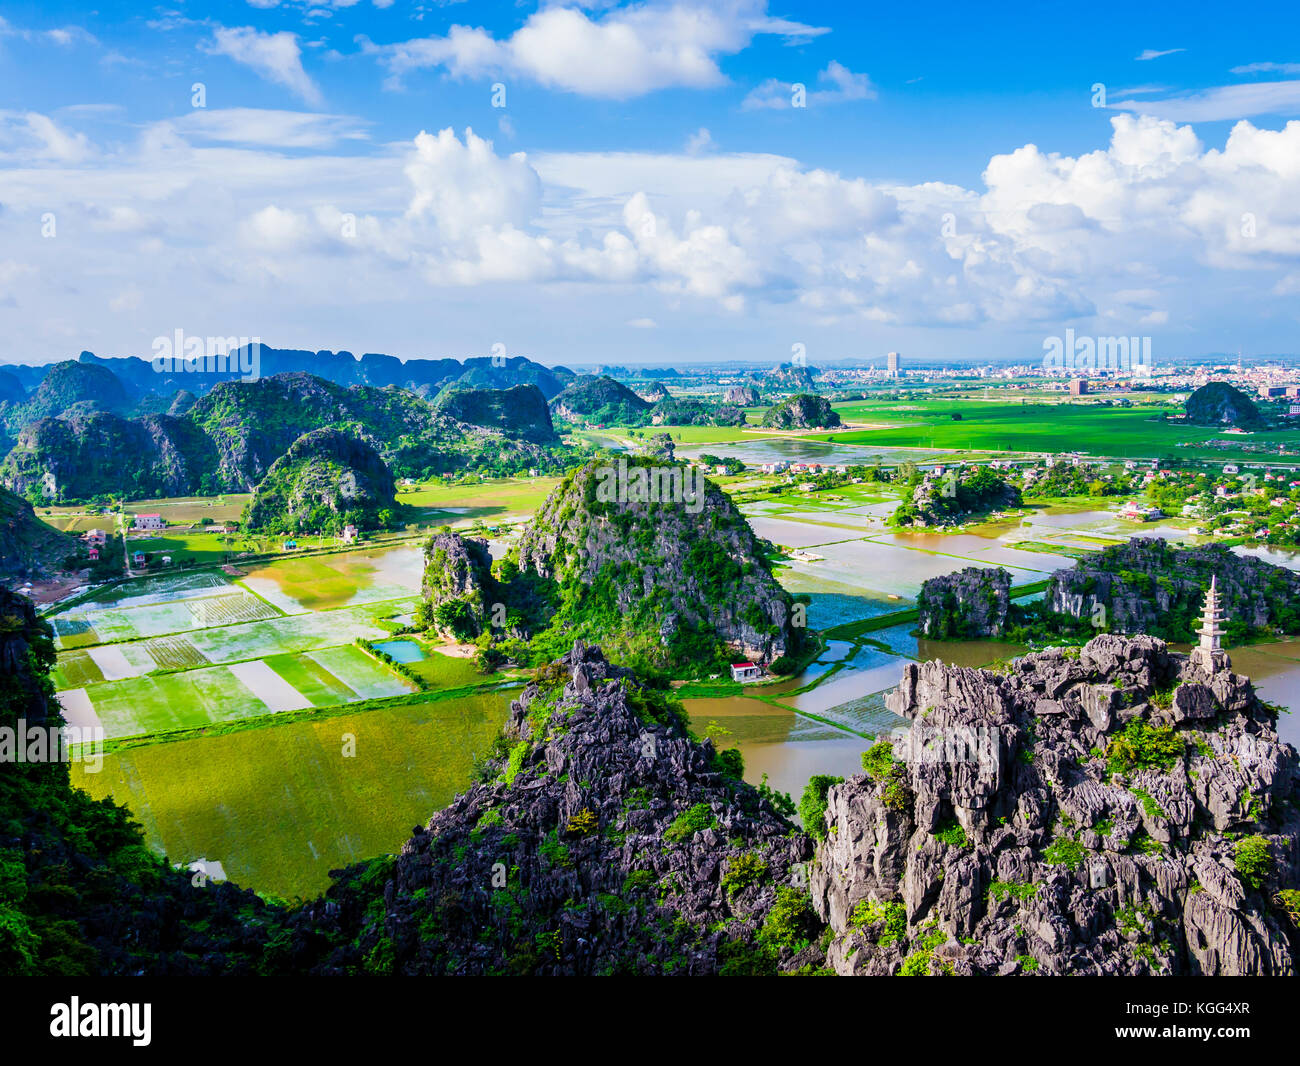 Vista panorámica de formaciones de karst y los campos de arroz en Tam Coc, provincia de Ninh Binh, Vietnam Foto de stock